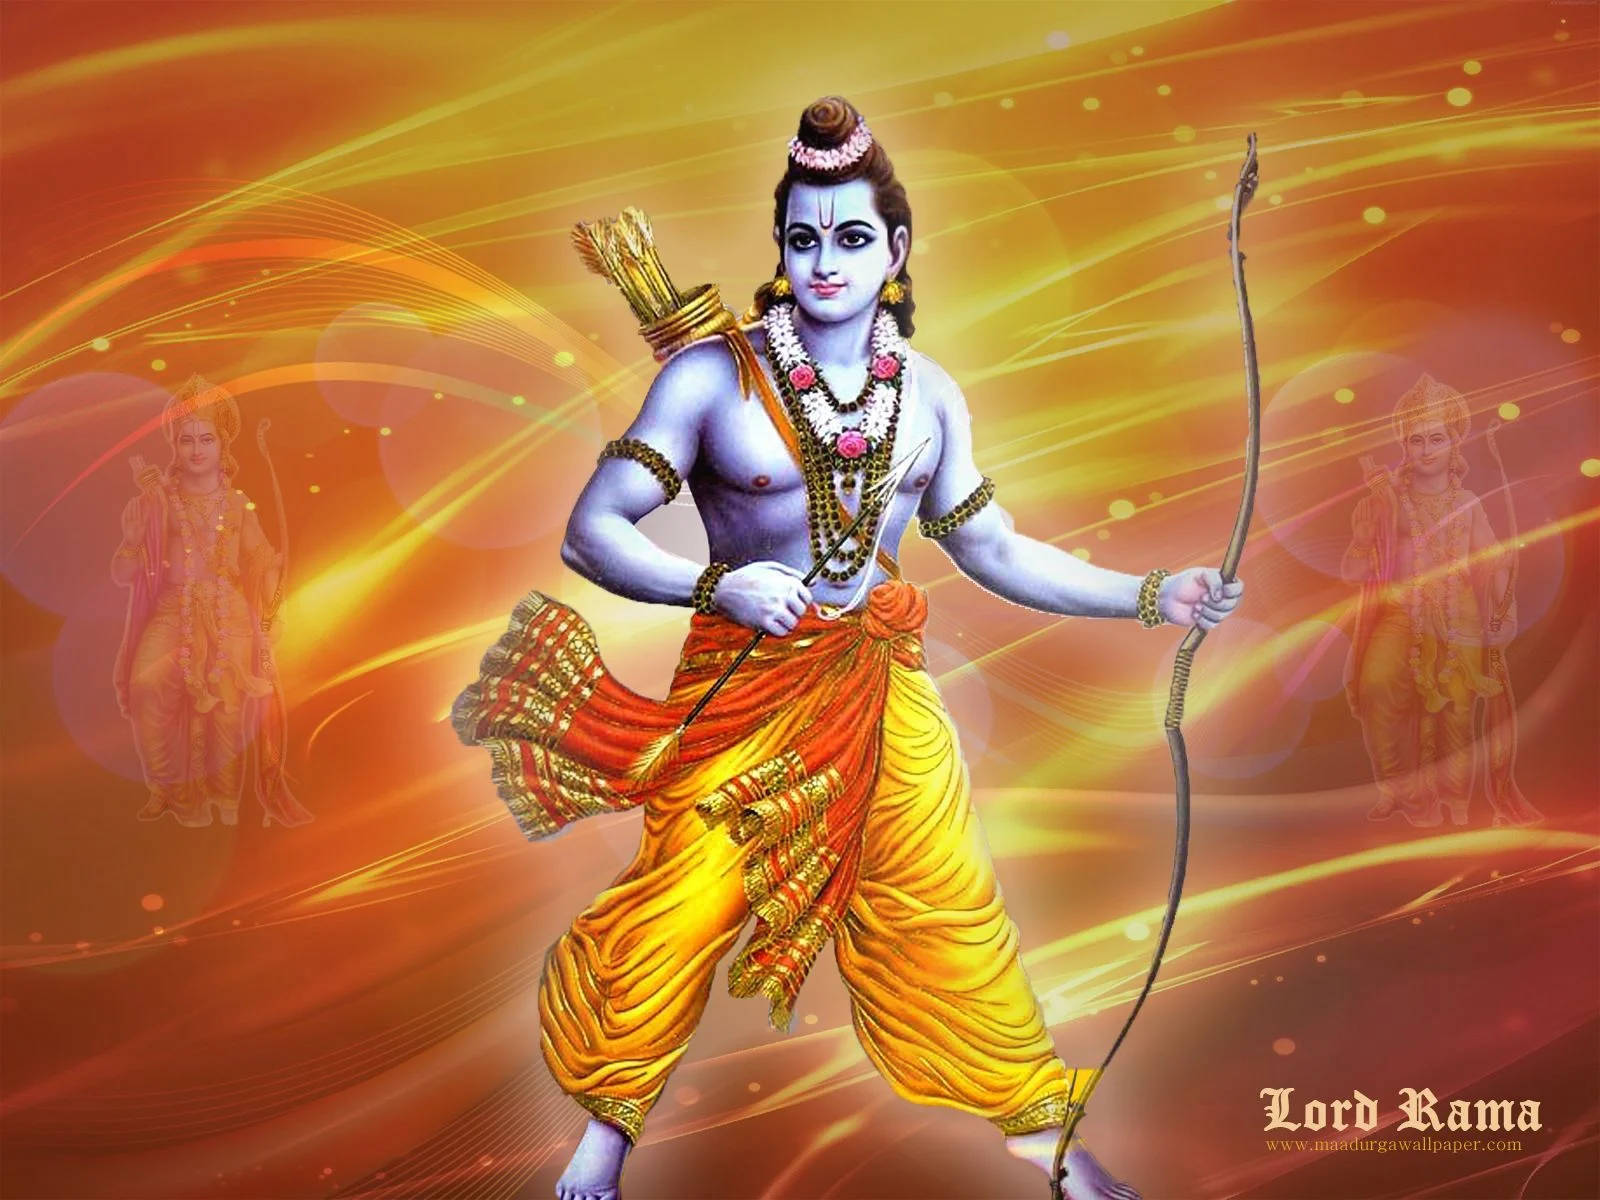 Hindu God Ram Ji In Aesthetic Orange